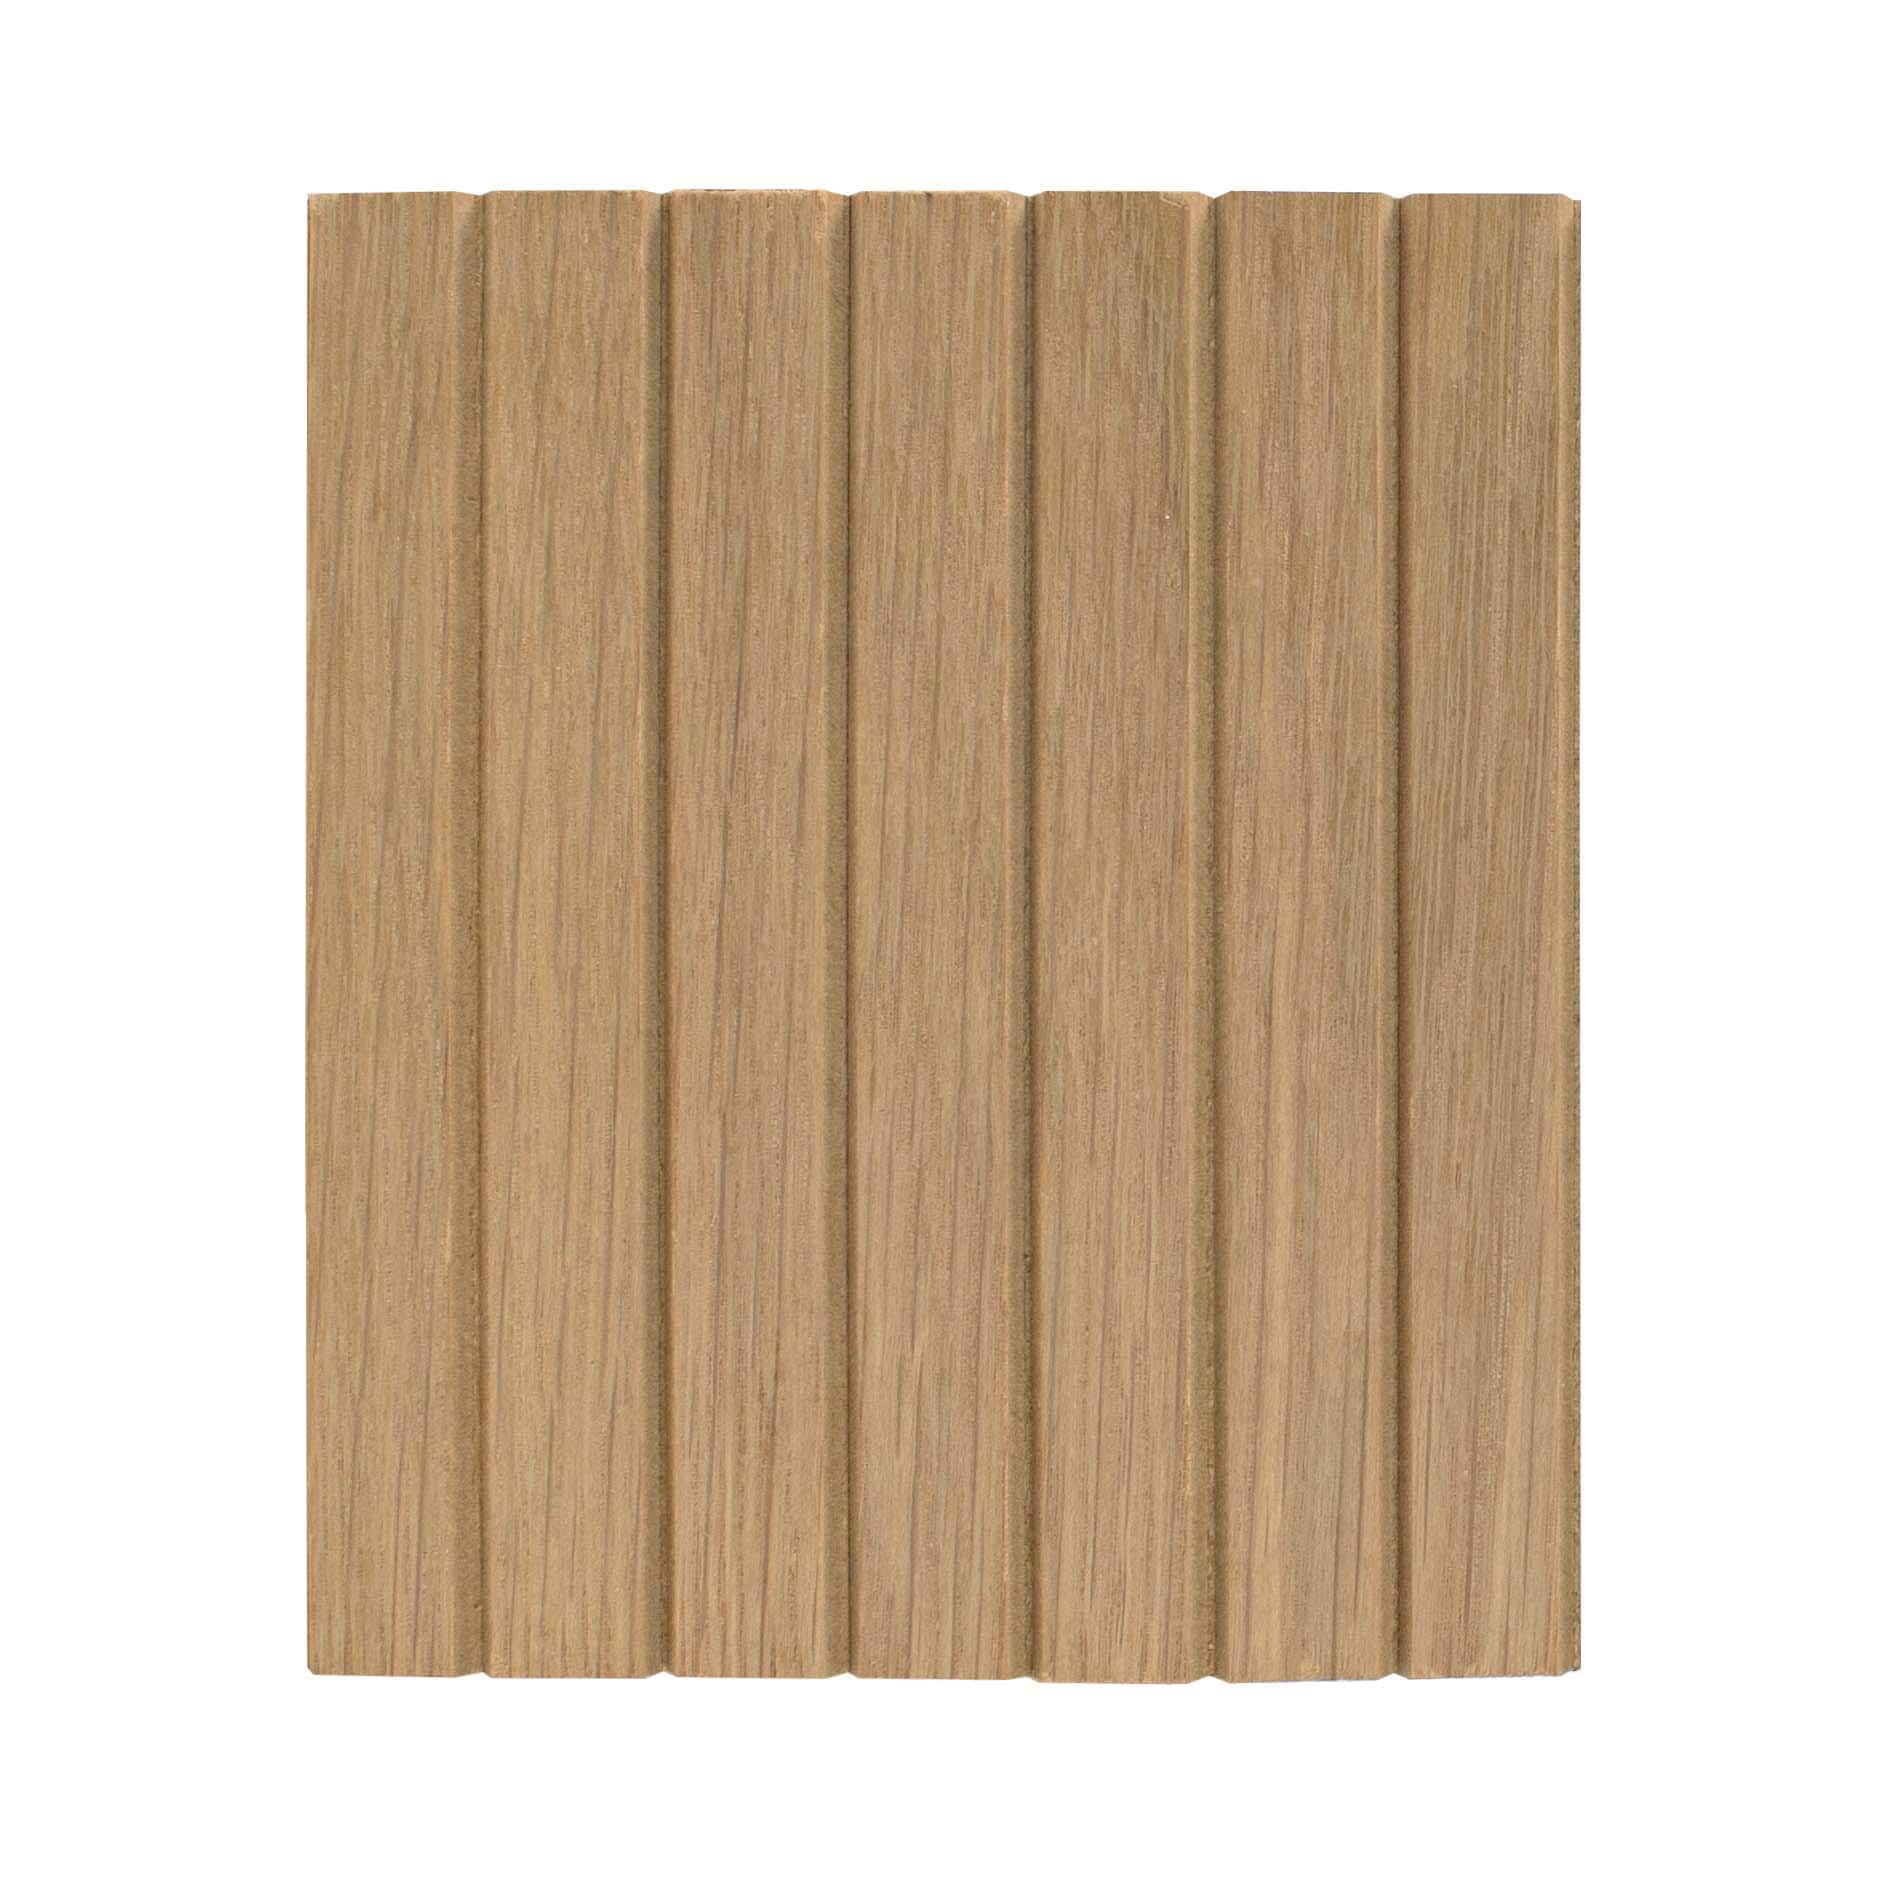 L:2.5meters Width:580mm T:0.3mm Red Walnut Wood Veneer Sheets For